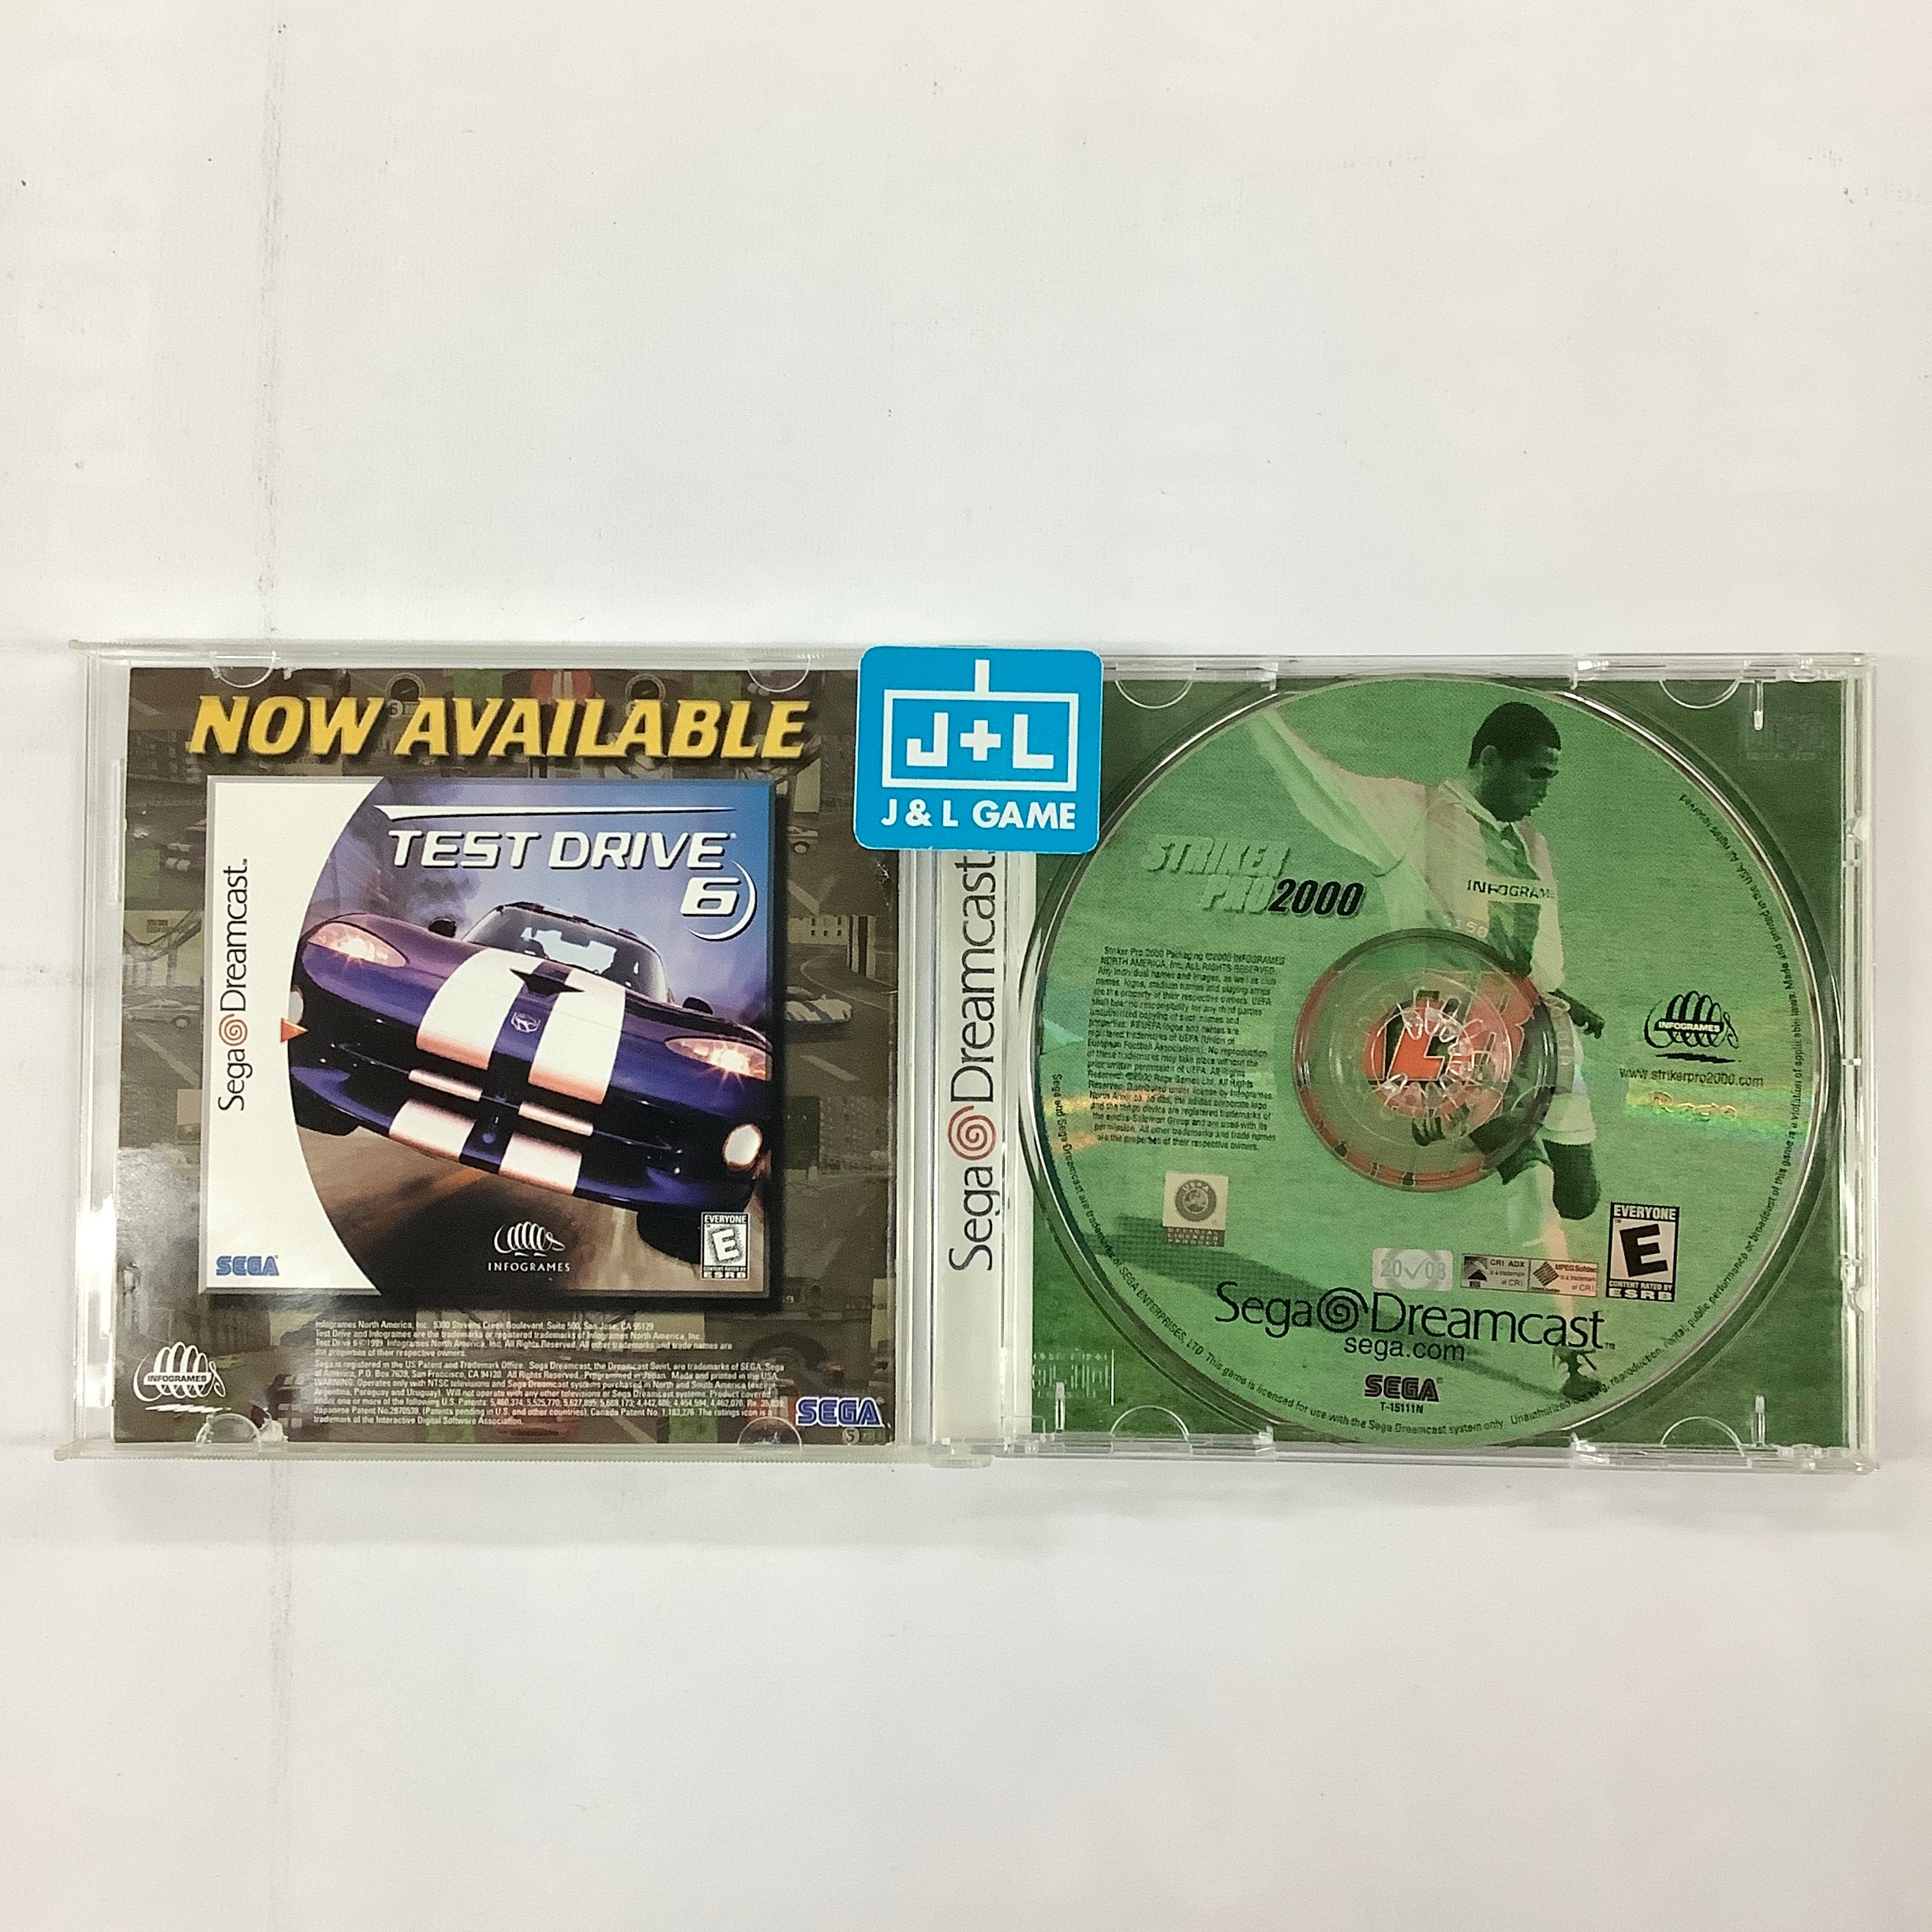 Striker Pro 2000 - (DC) SEGA Dreamcast [Pre-Owned] Video Games Infogrames   